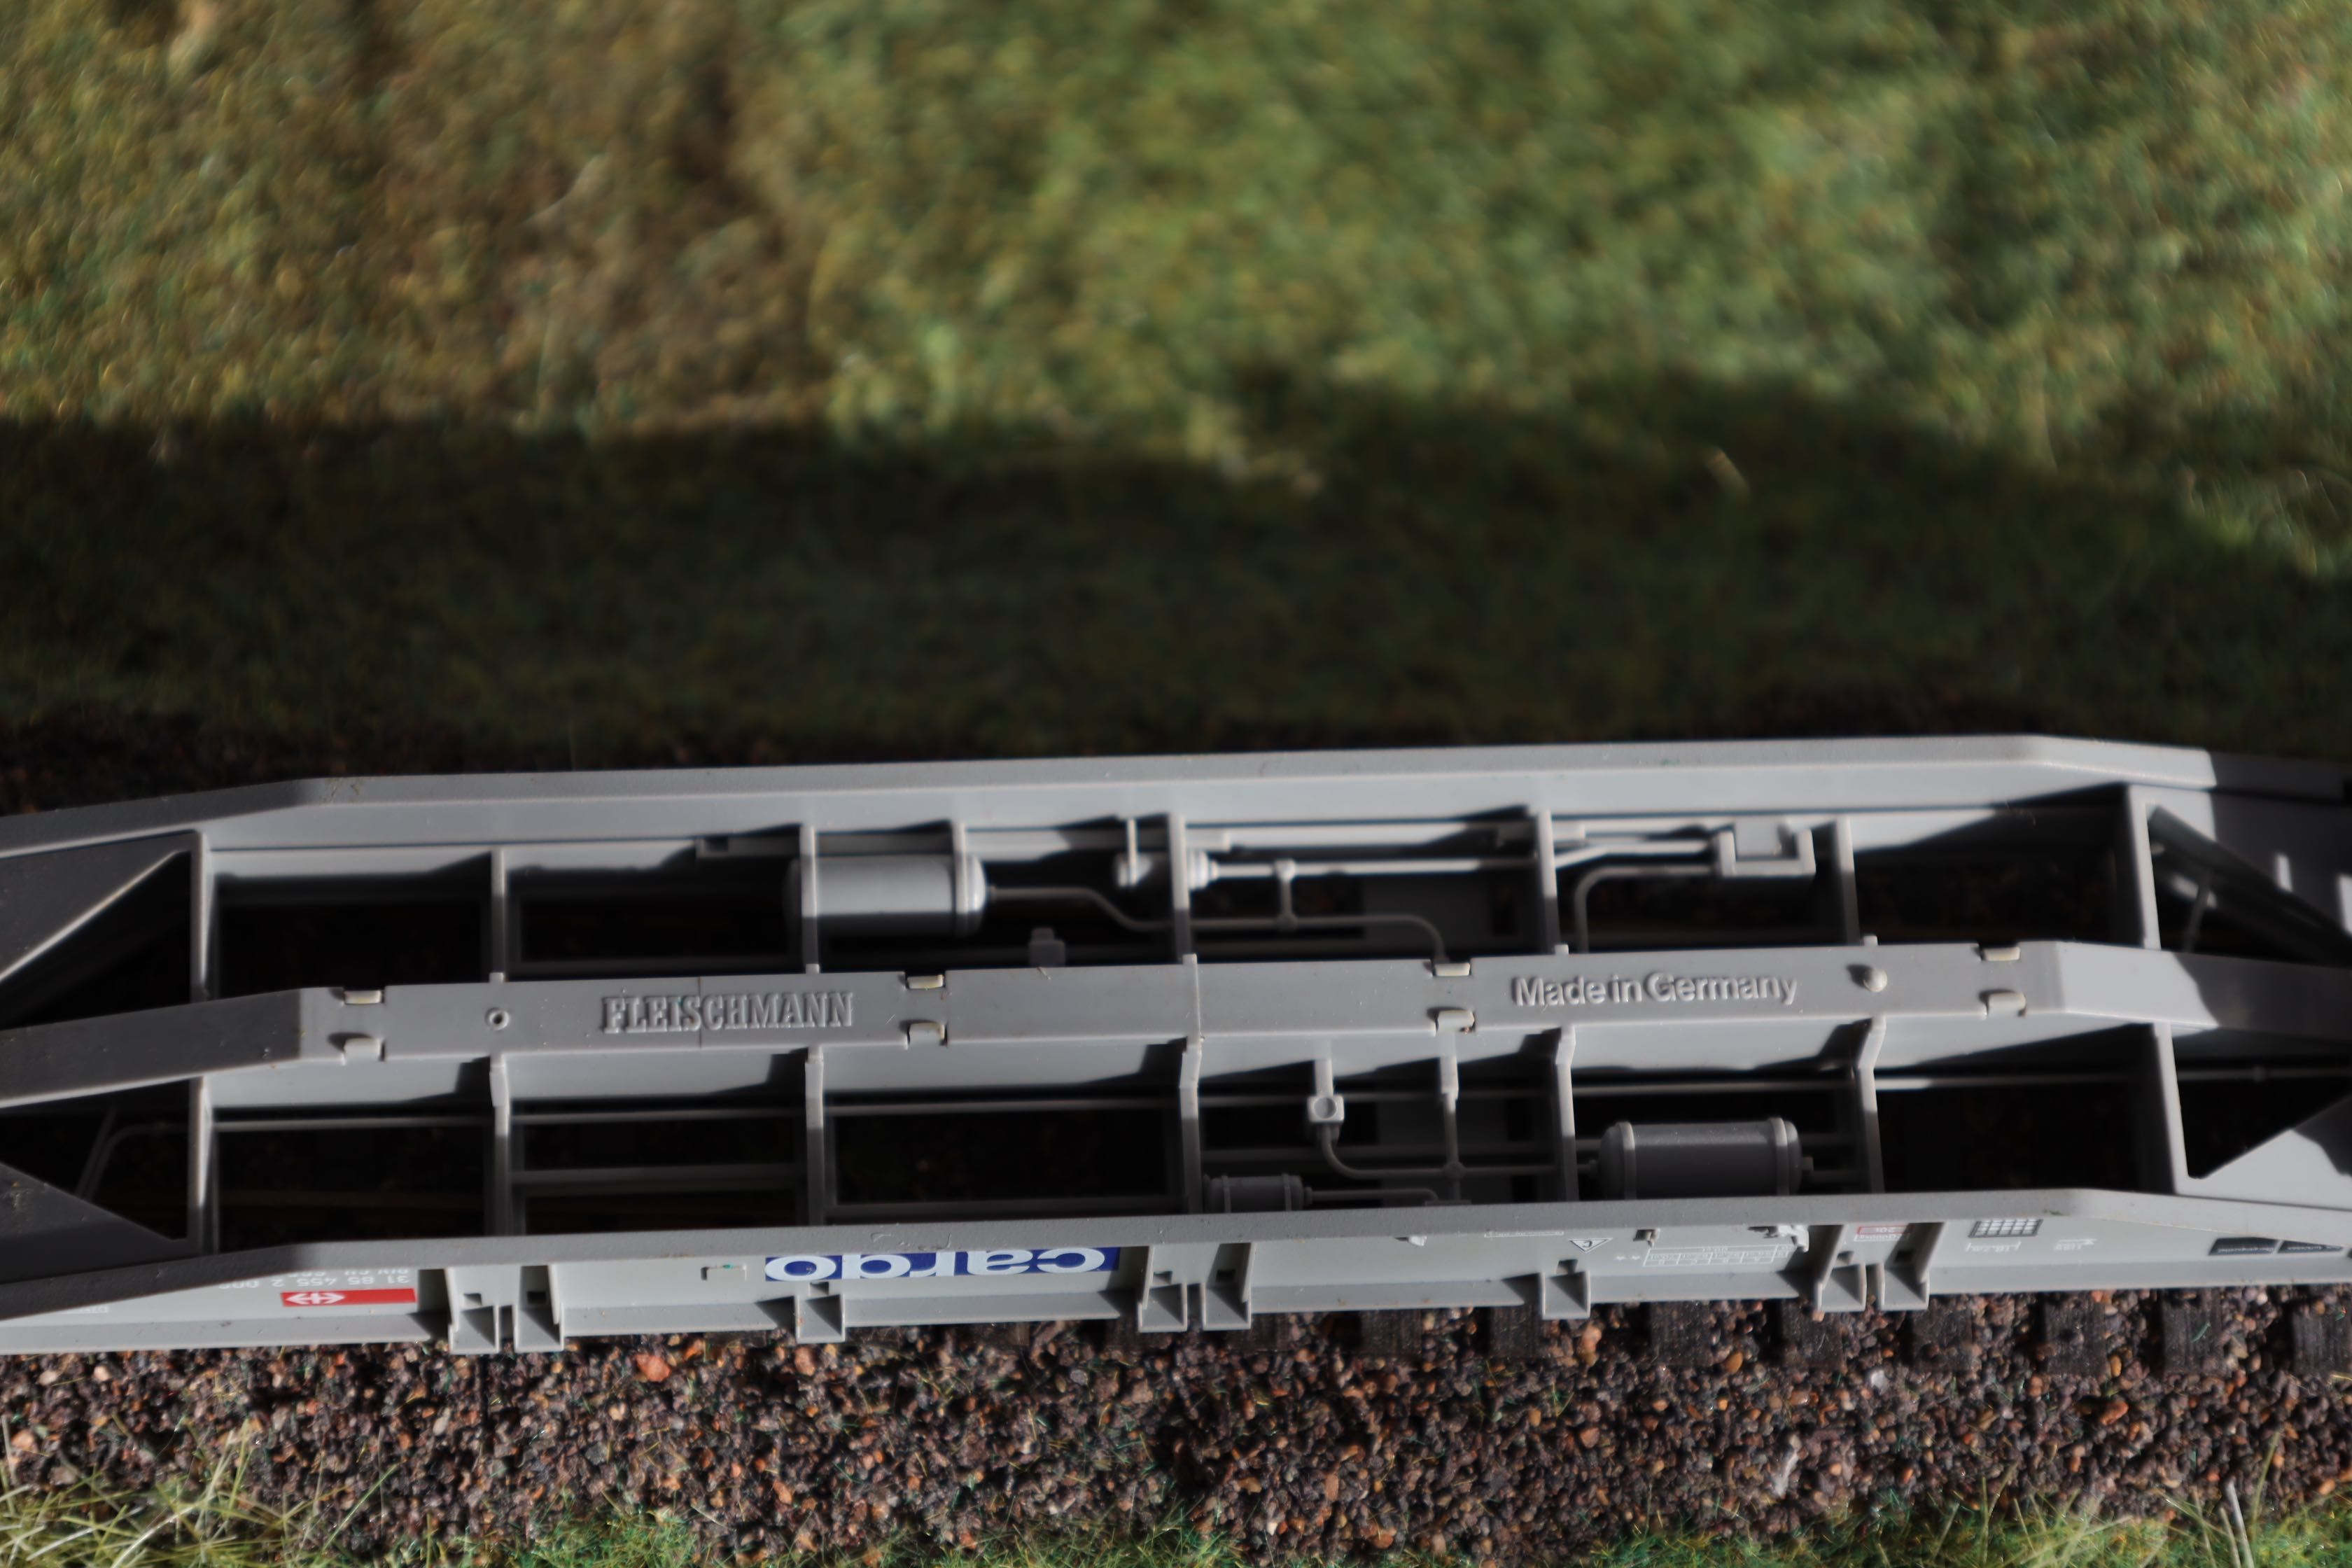 Fleischmann SBB Cargo crossrail platforma sgns 1:87 wagon kontenerowy